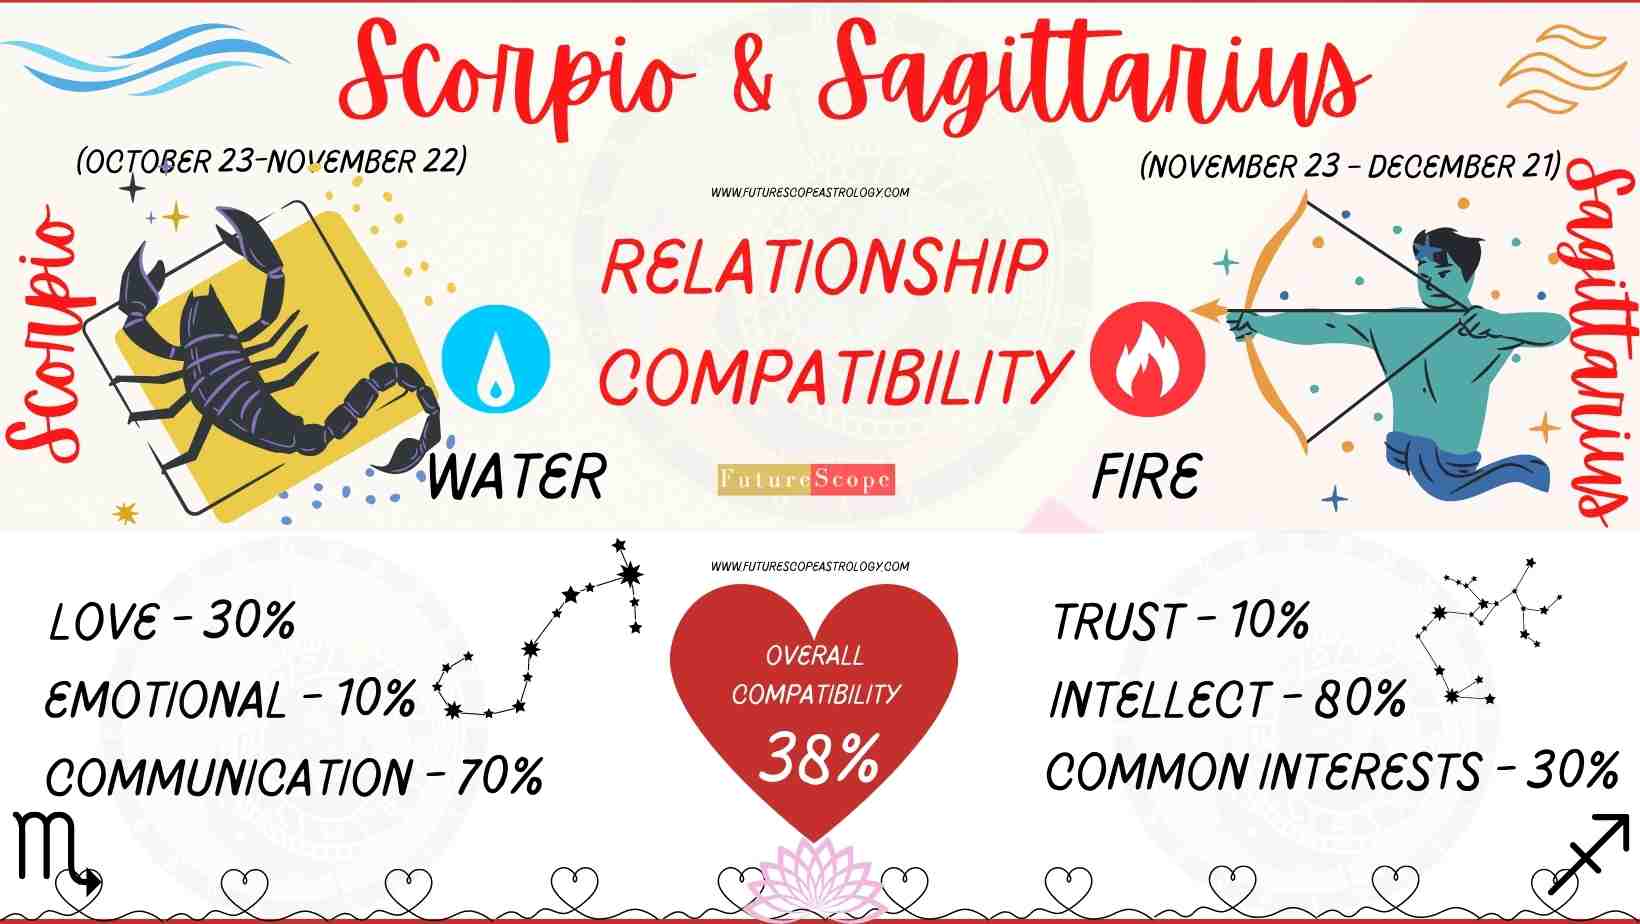 Scorpio And Sagittarius Compatibility 10 